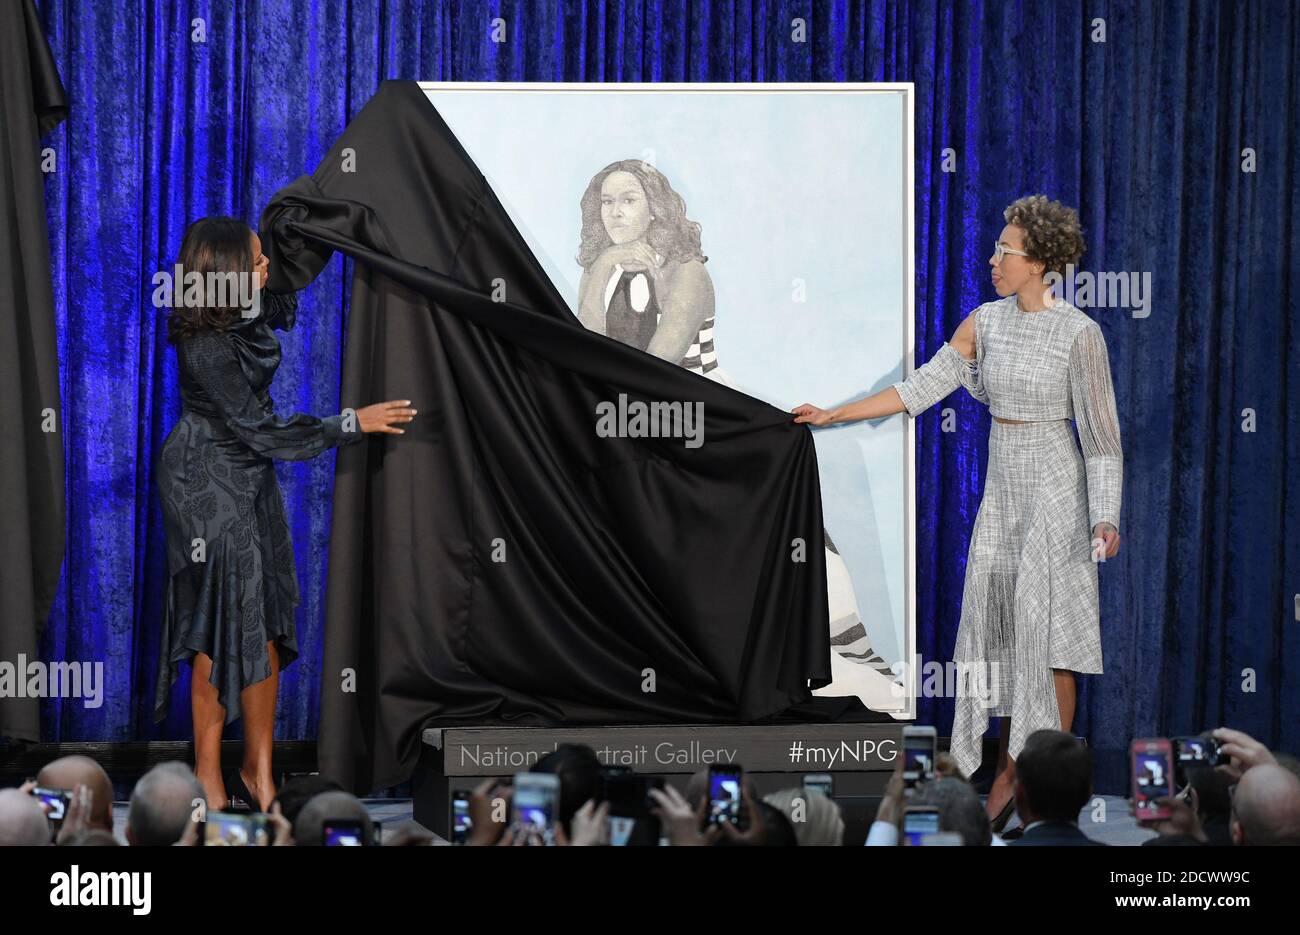 L'ex First Lady Michelle Obama con l'artista Amy Sherald svela il suo ritratto ufficiale alla National Portrait Gallery , 12 febbraio 2018 a Washington, DC. Foto di Olivier Douliery/Abaca Press Foto Stock